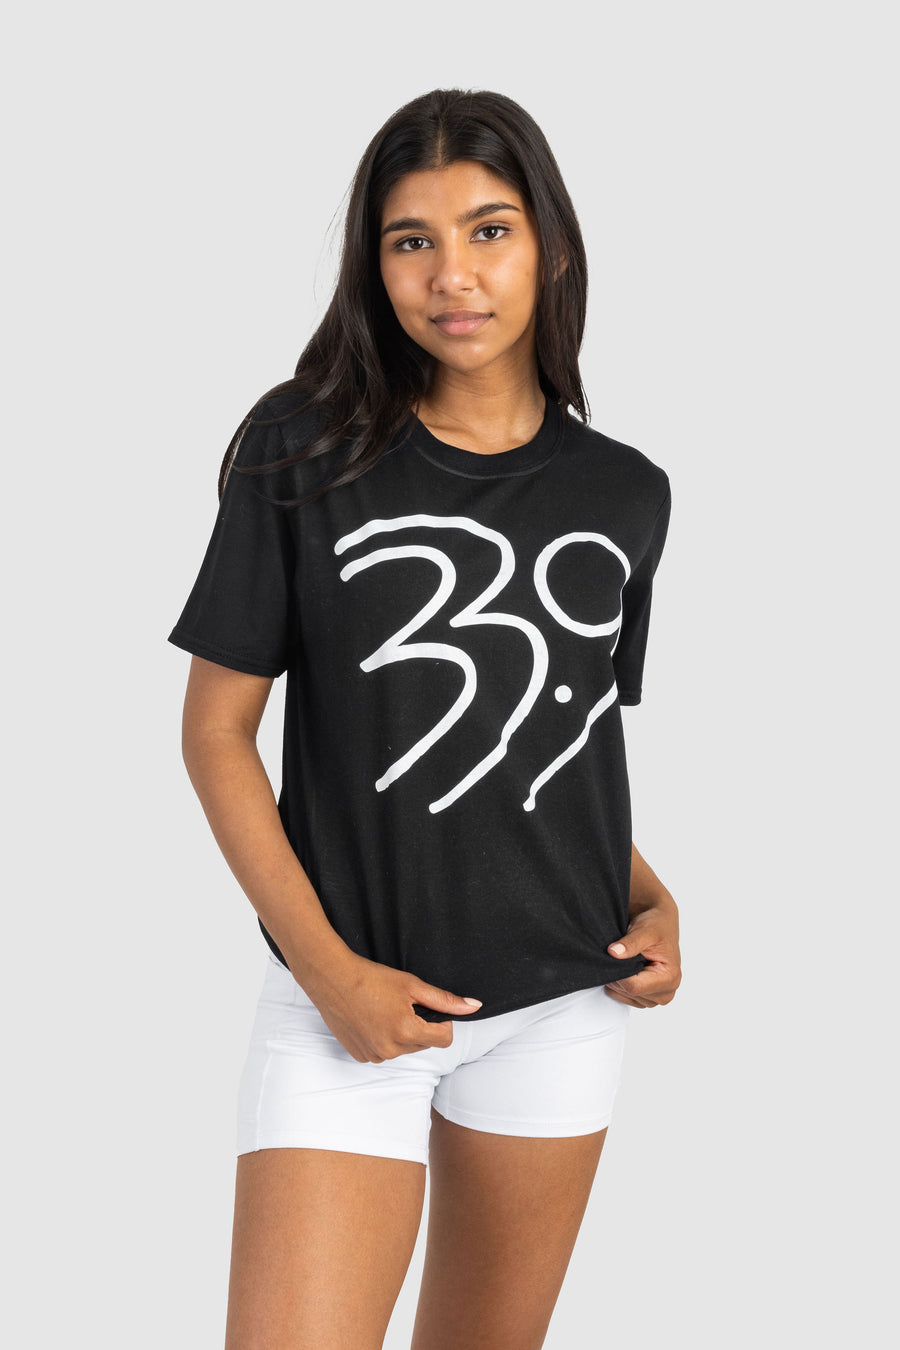 Girls Black 33.9 T-shirt